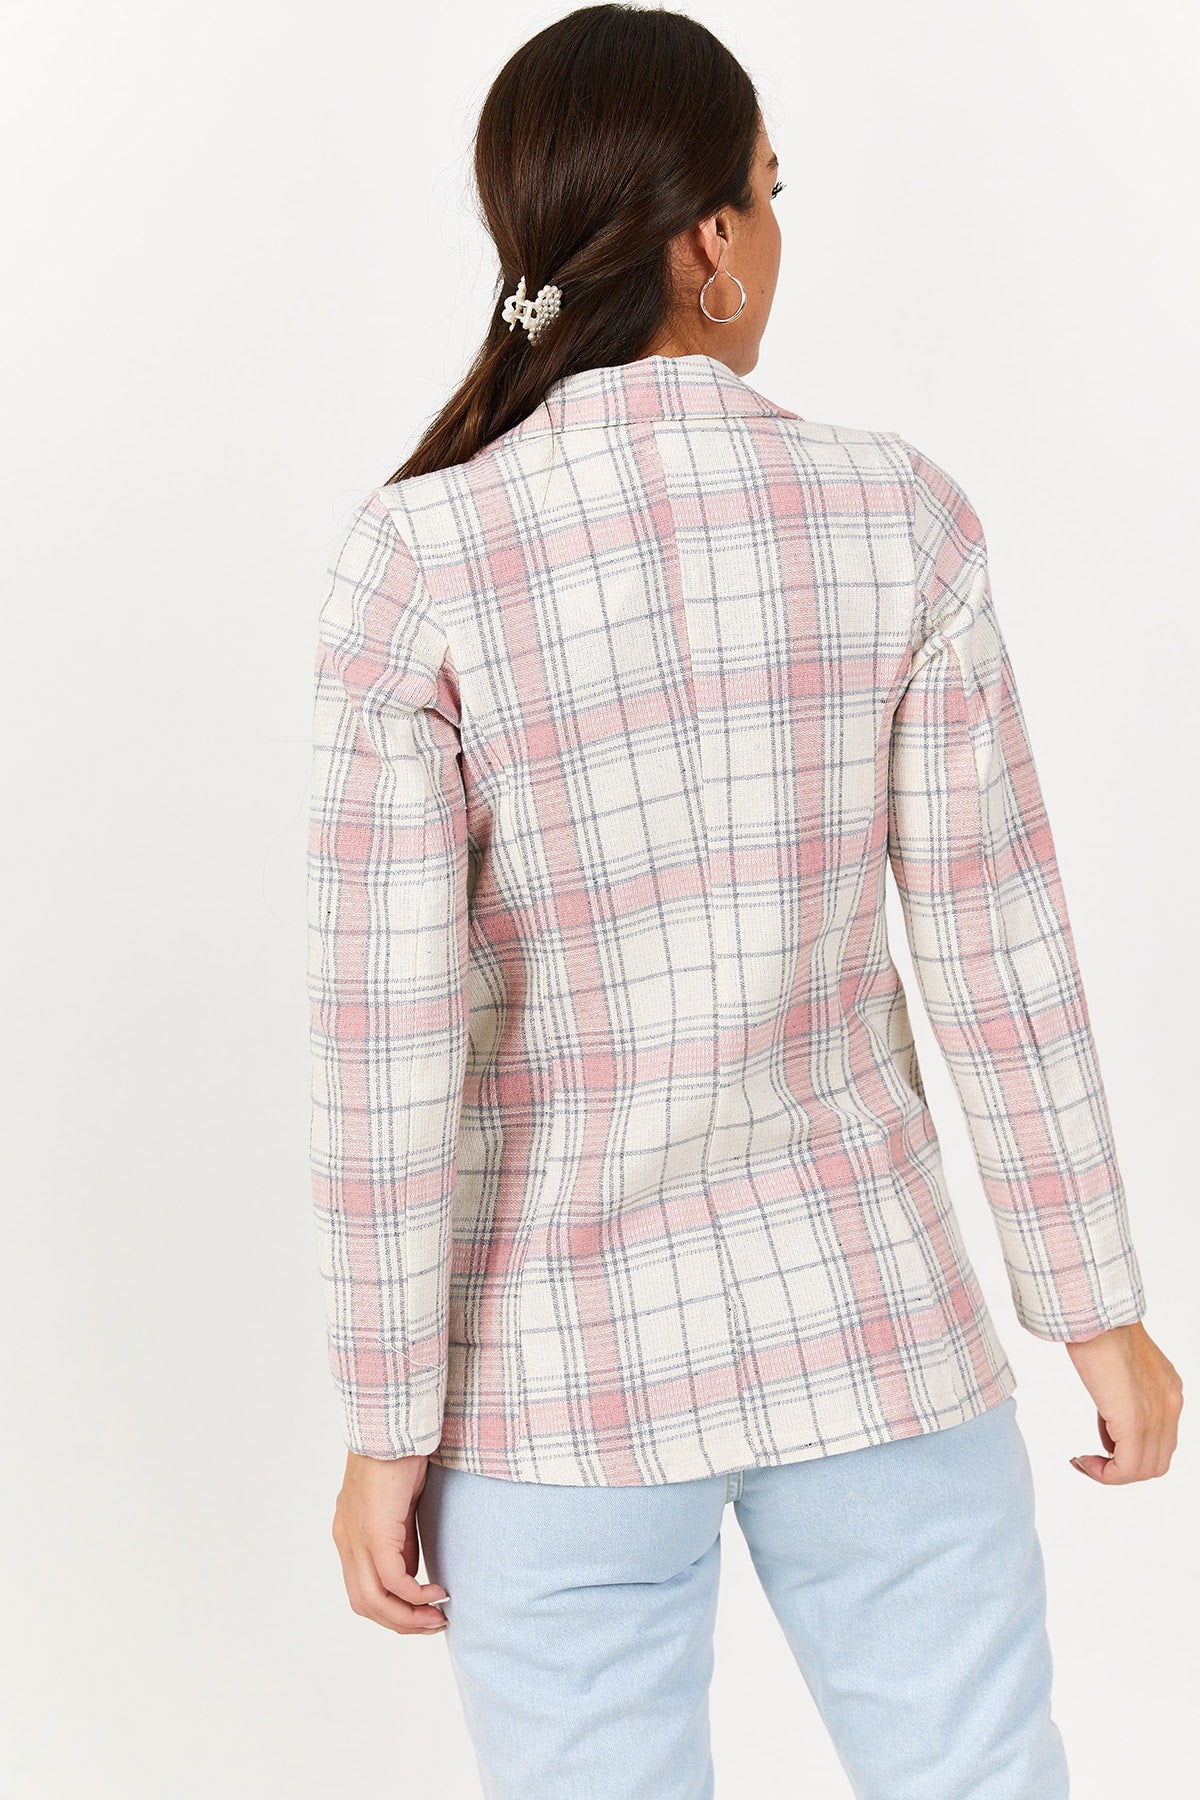 WOMEN'S powder plaid pattern Single button jacket ARM-221089